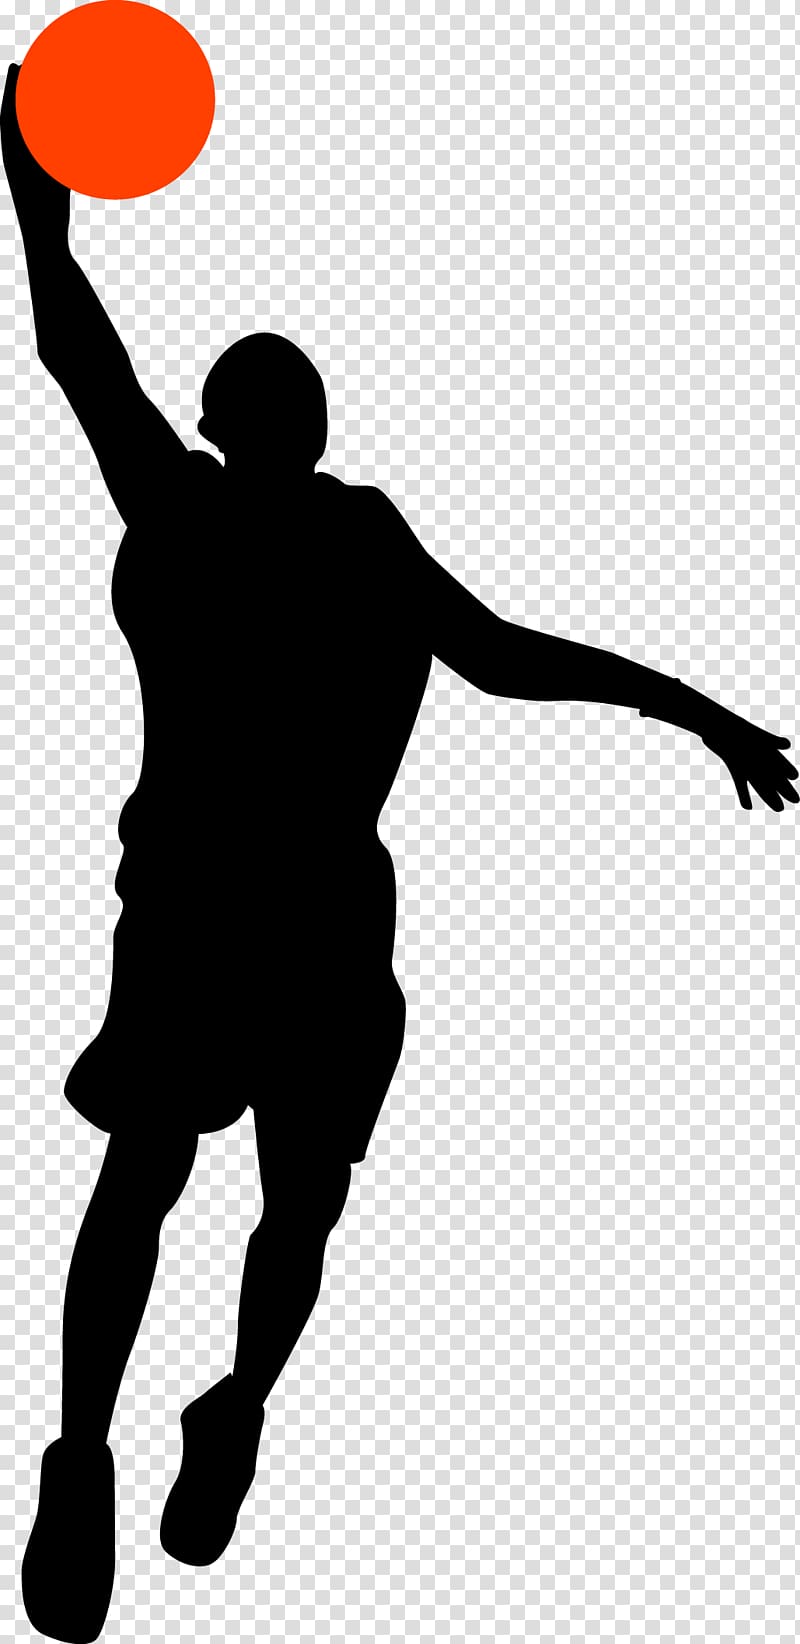 basketball player silhouette shooting